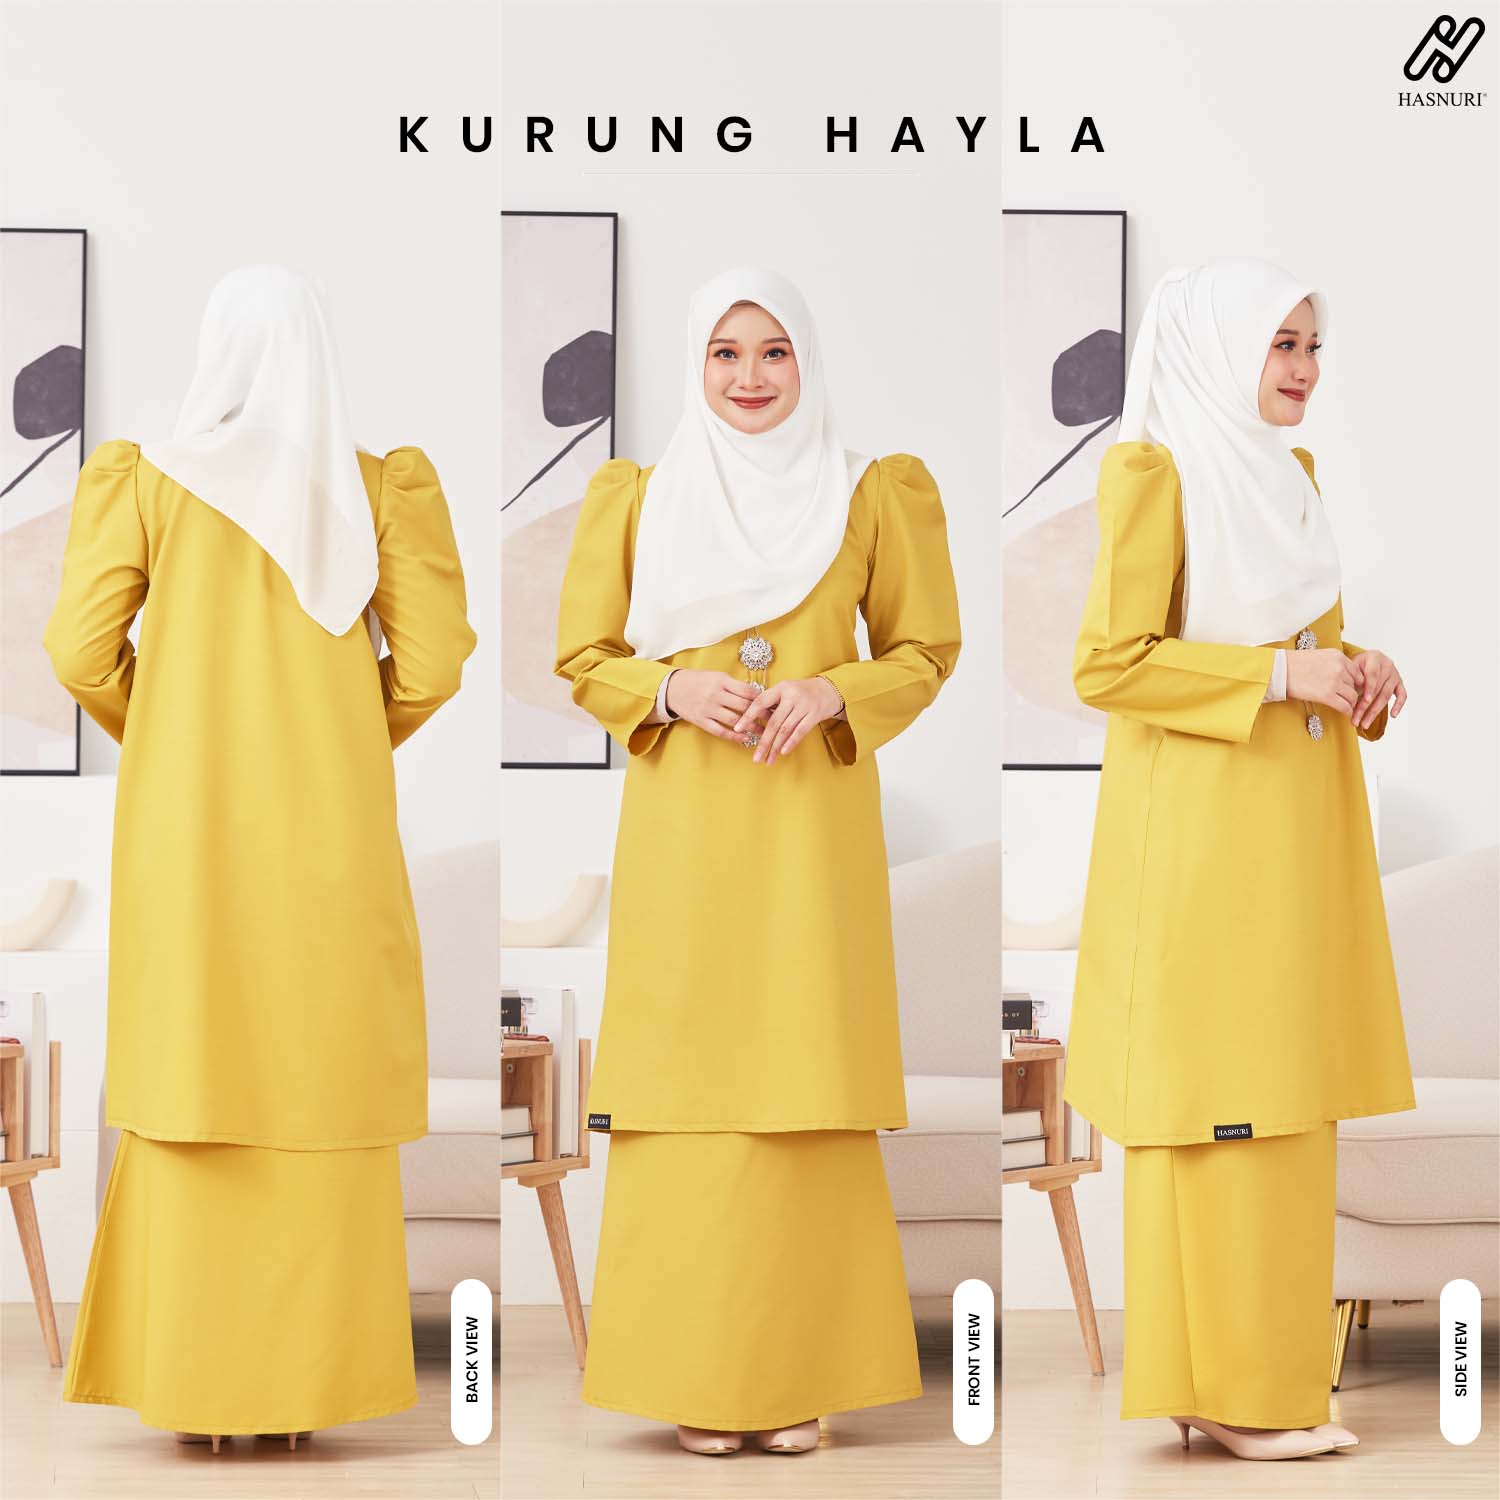 Kurung Hayla - Moss Yellow